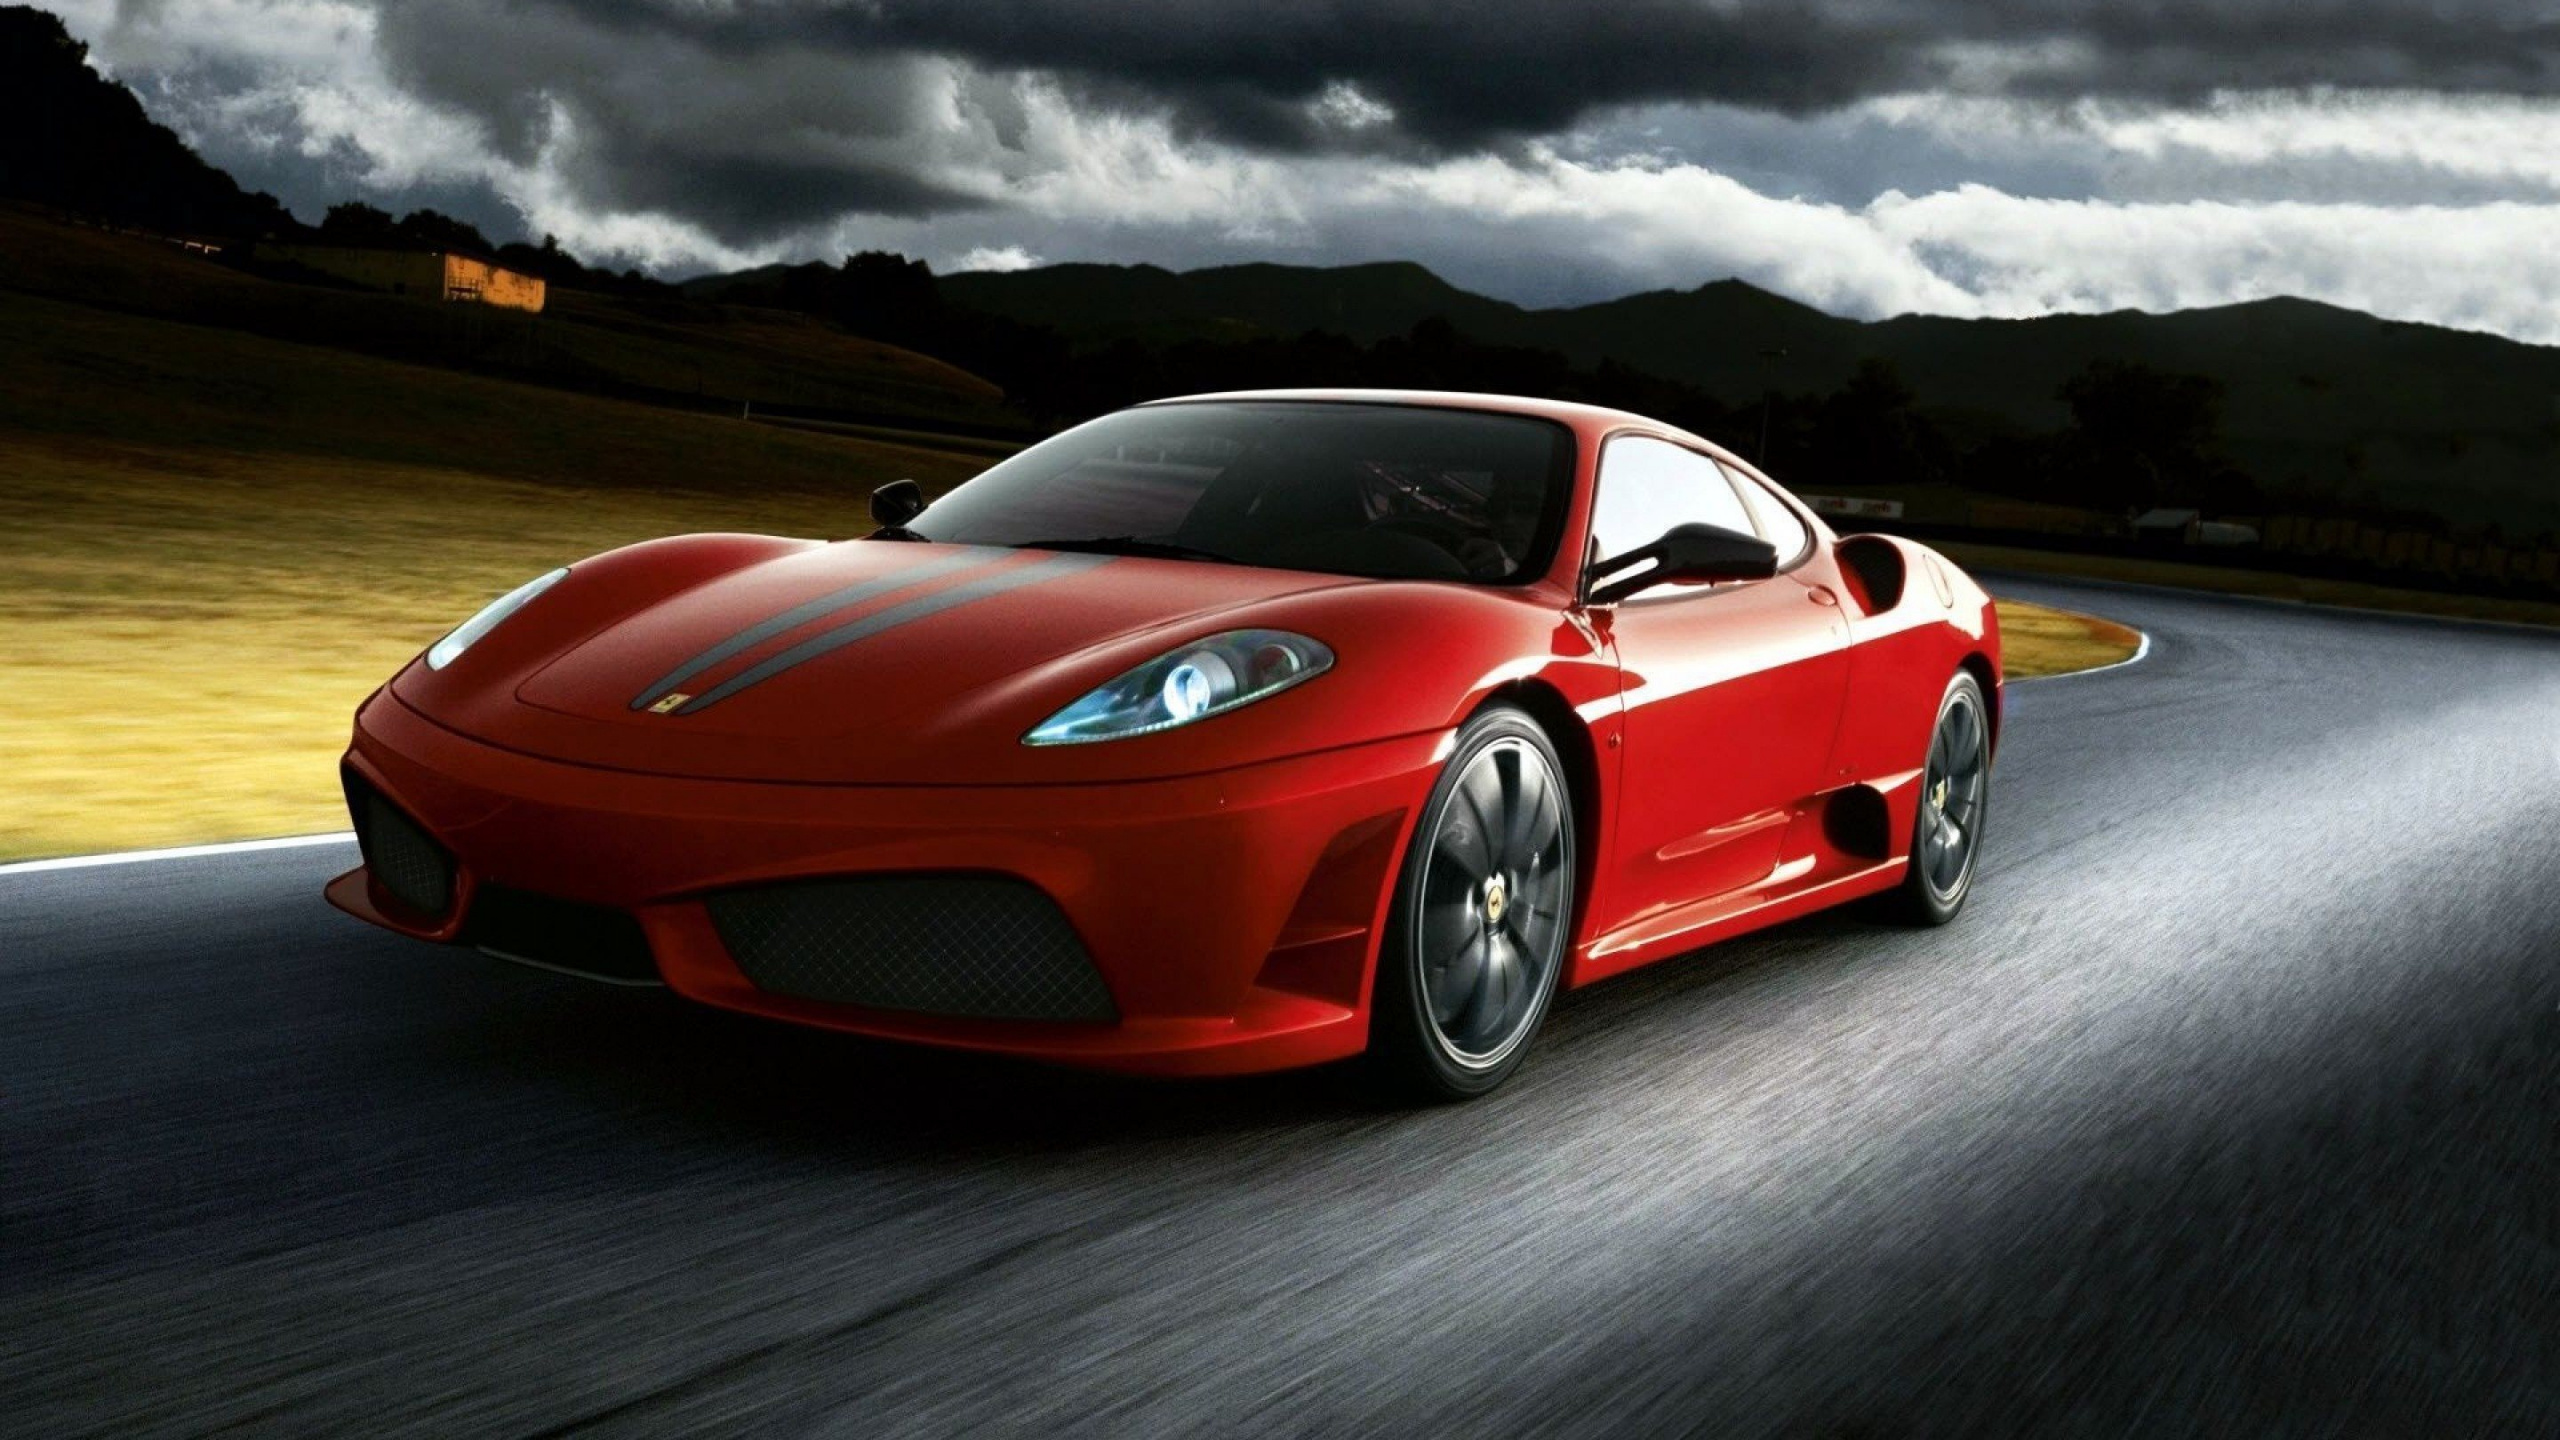 法拉利f430, Ferrari, 超级跑车, 法拉利599gto, 法拉利430红 壁纸 2560x1440 允许